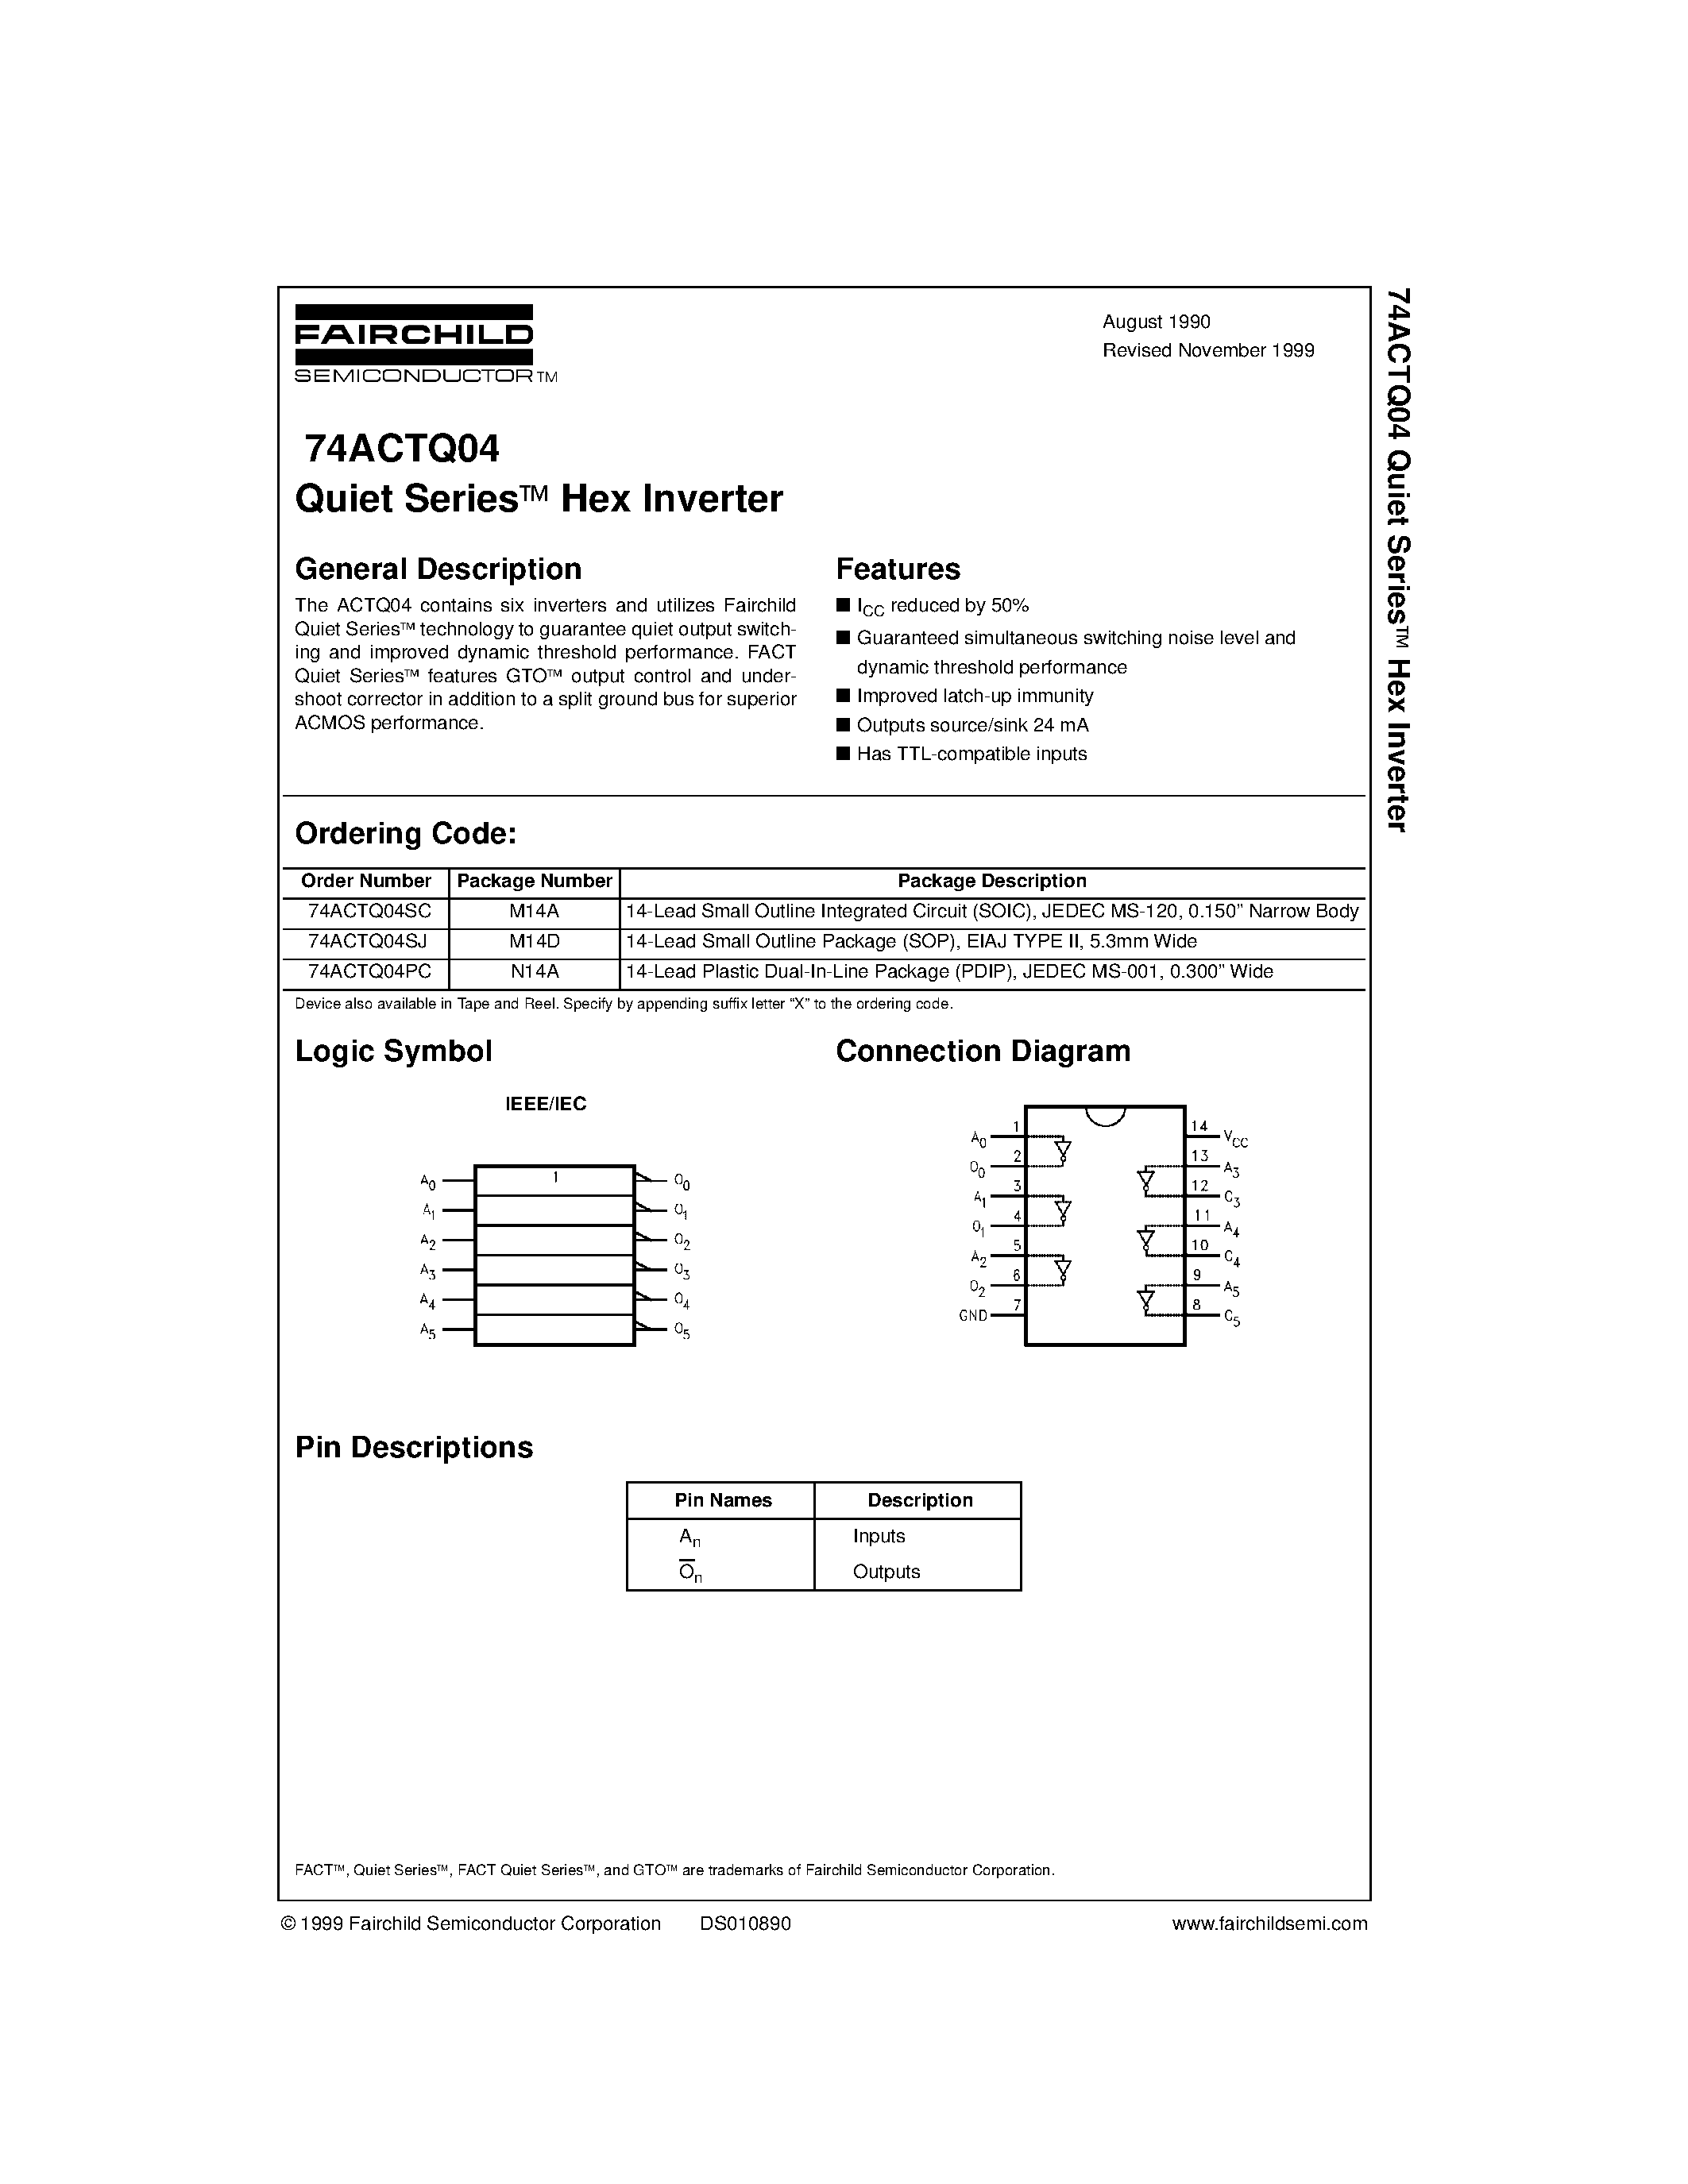 Datasheet 74ACTQ04SC - Quiet Series Hex Inverter page 1